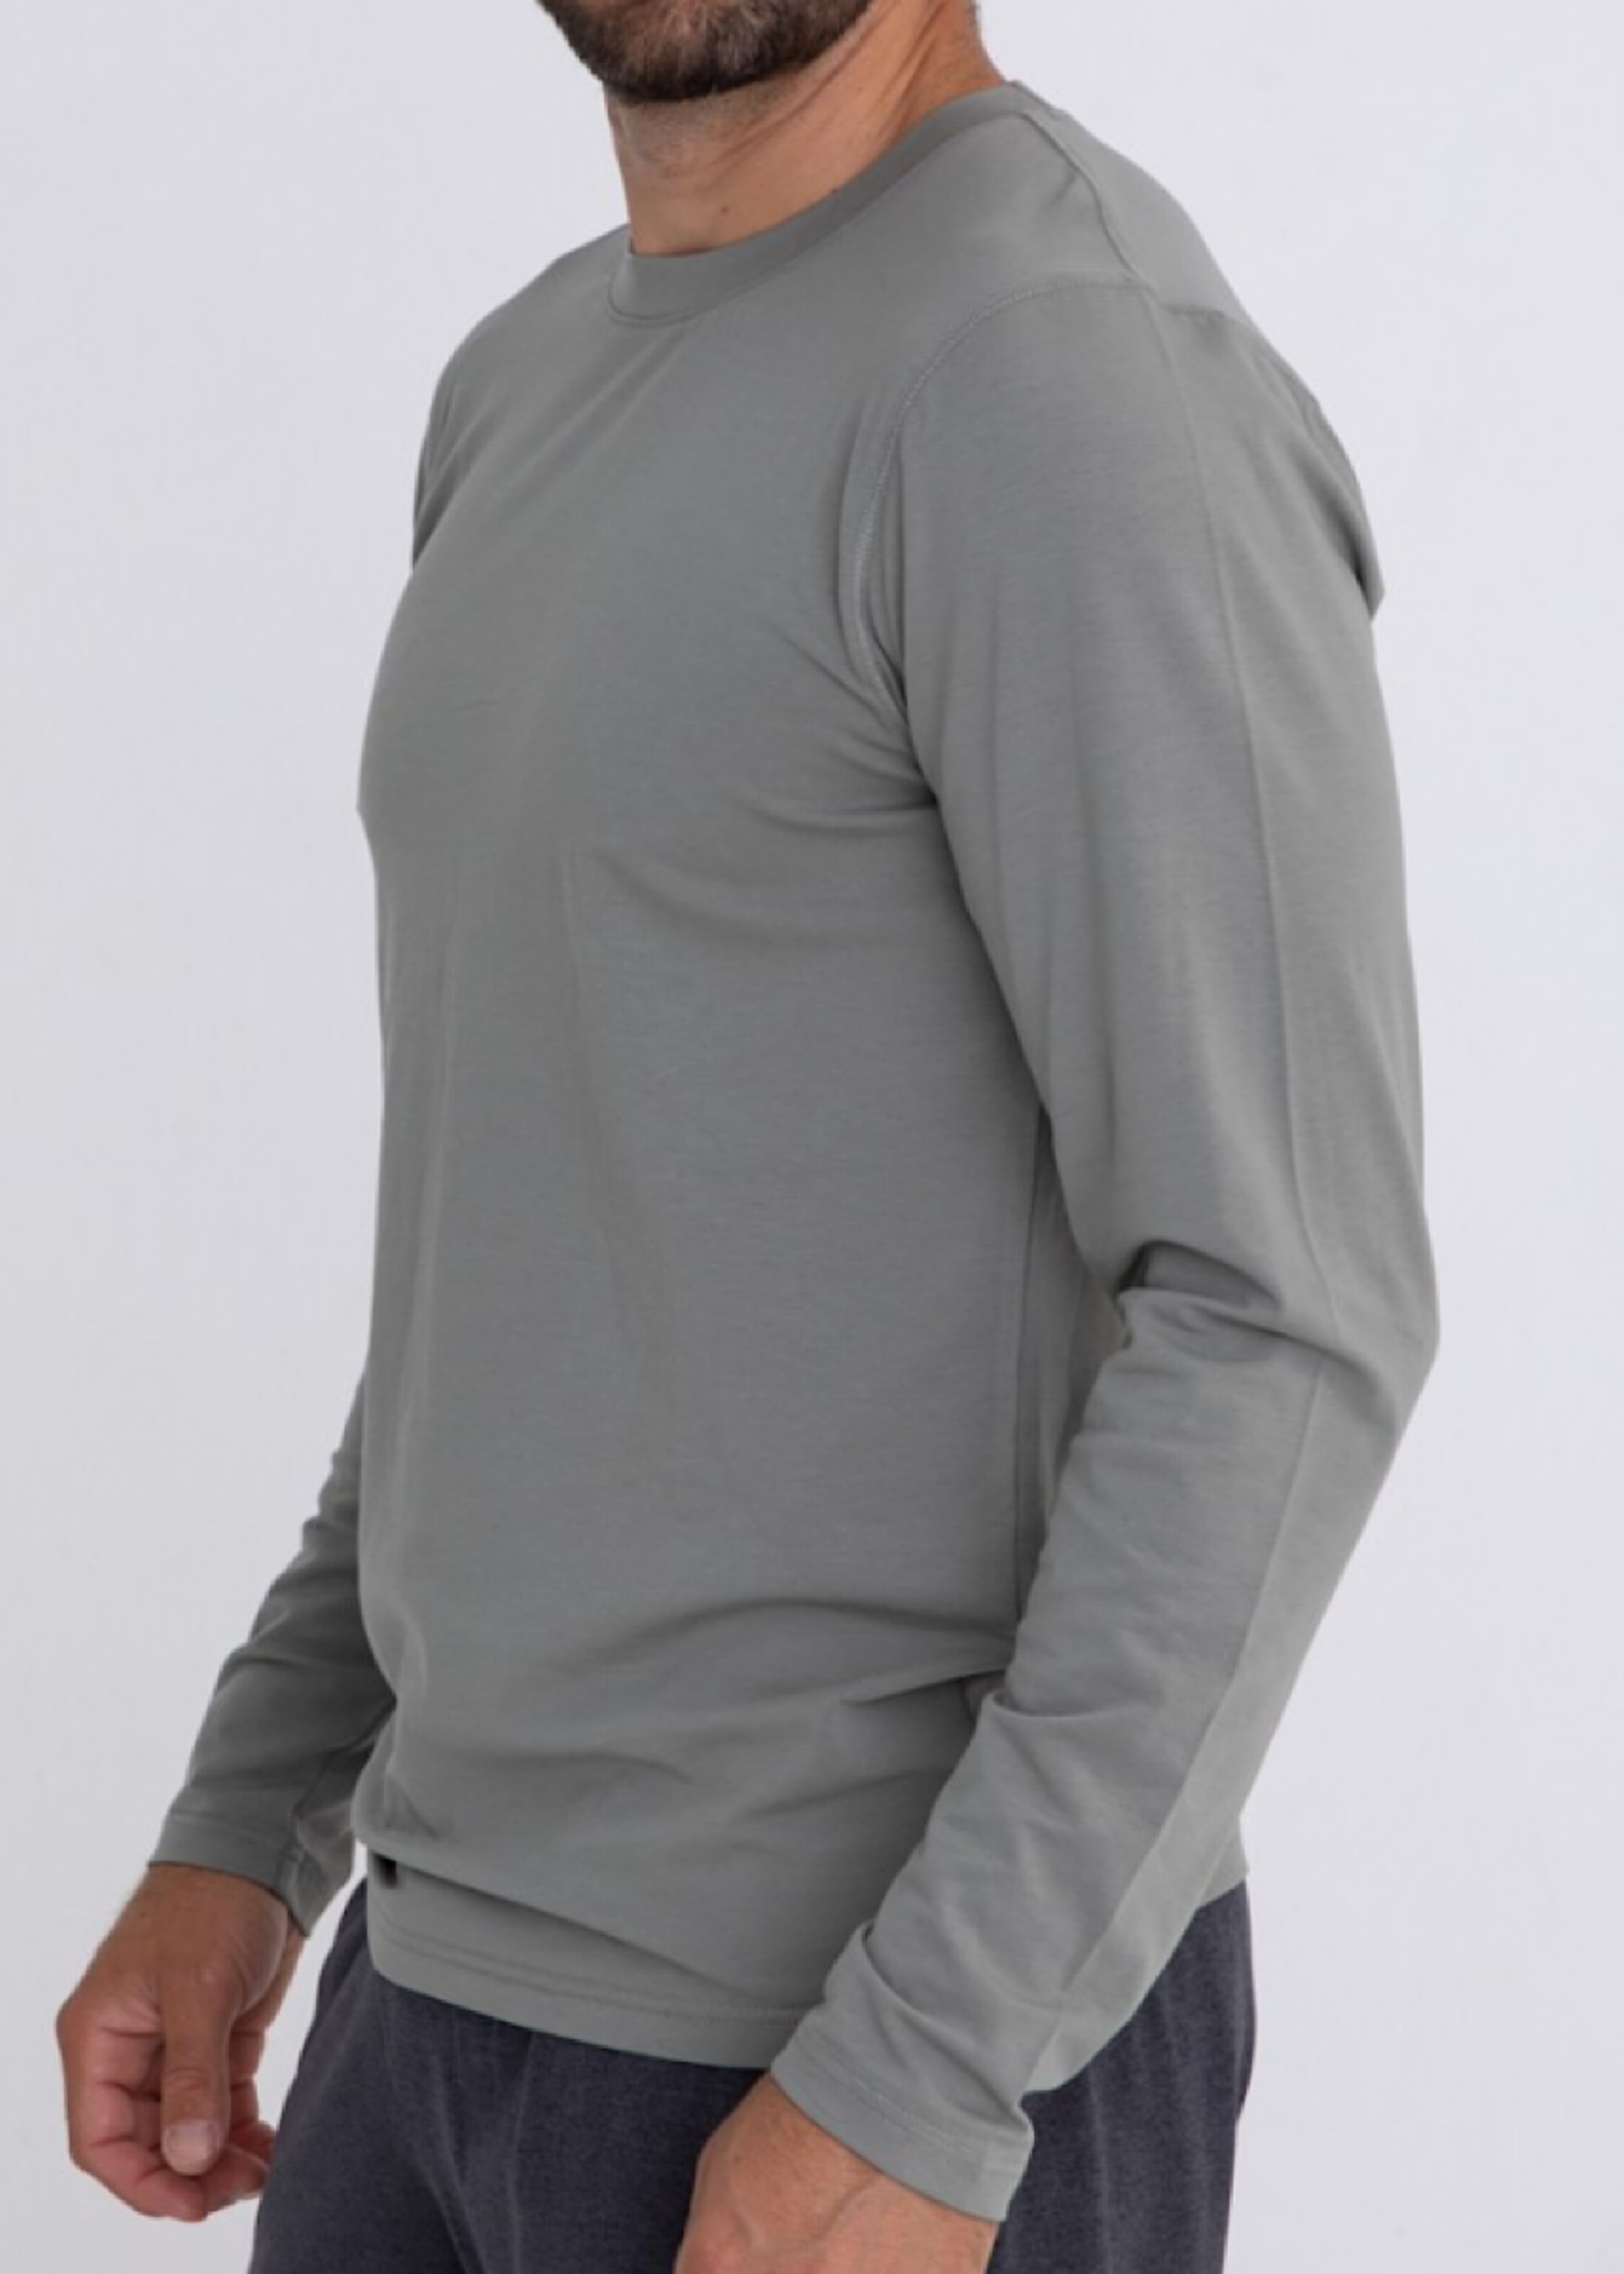 Men's Cotton Blend Long Sleeve Shirt